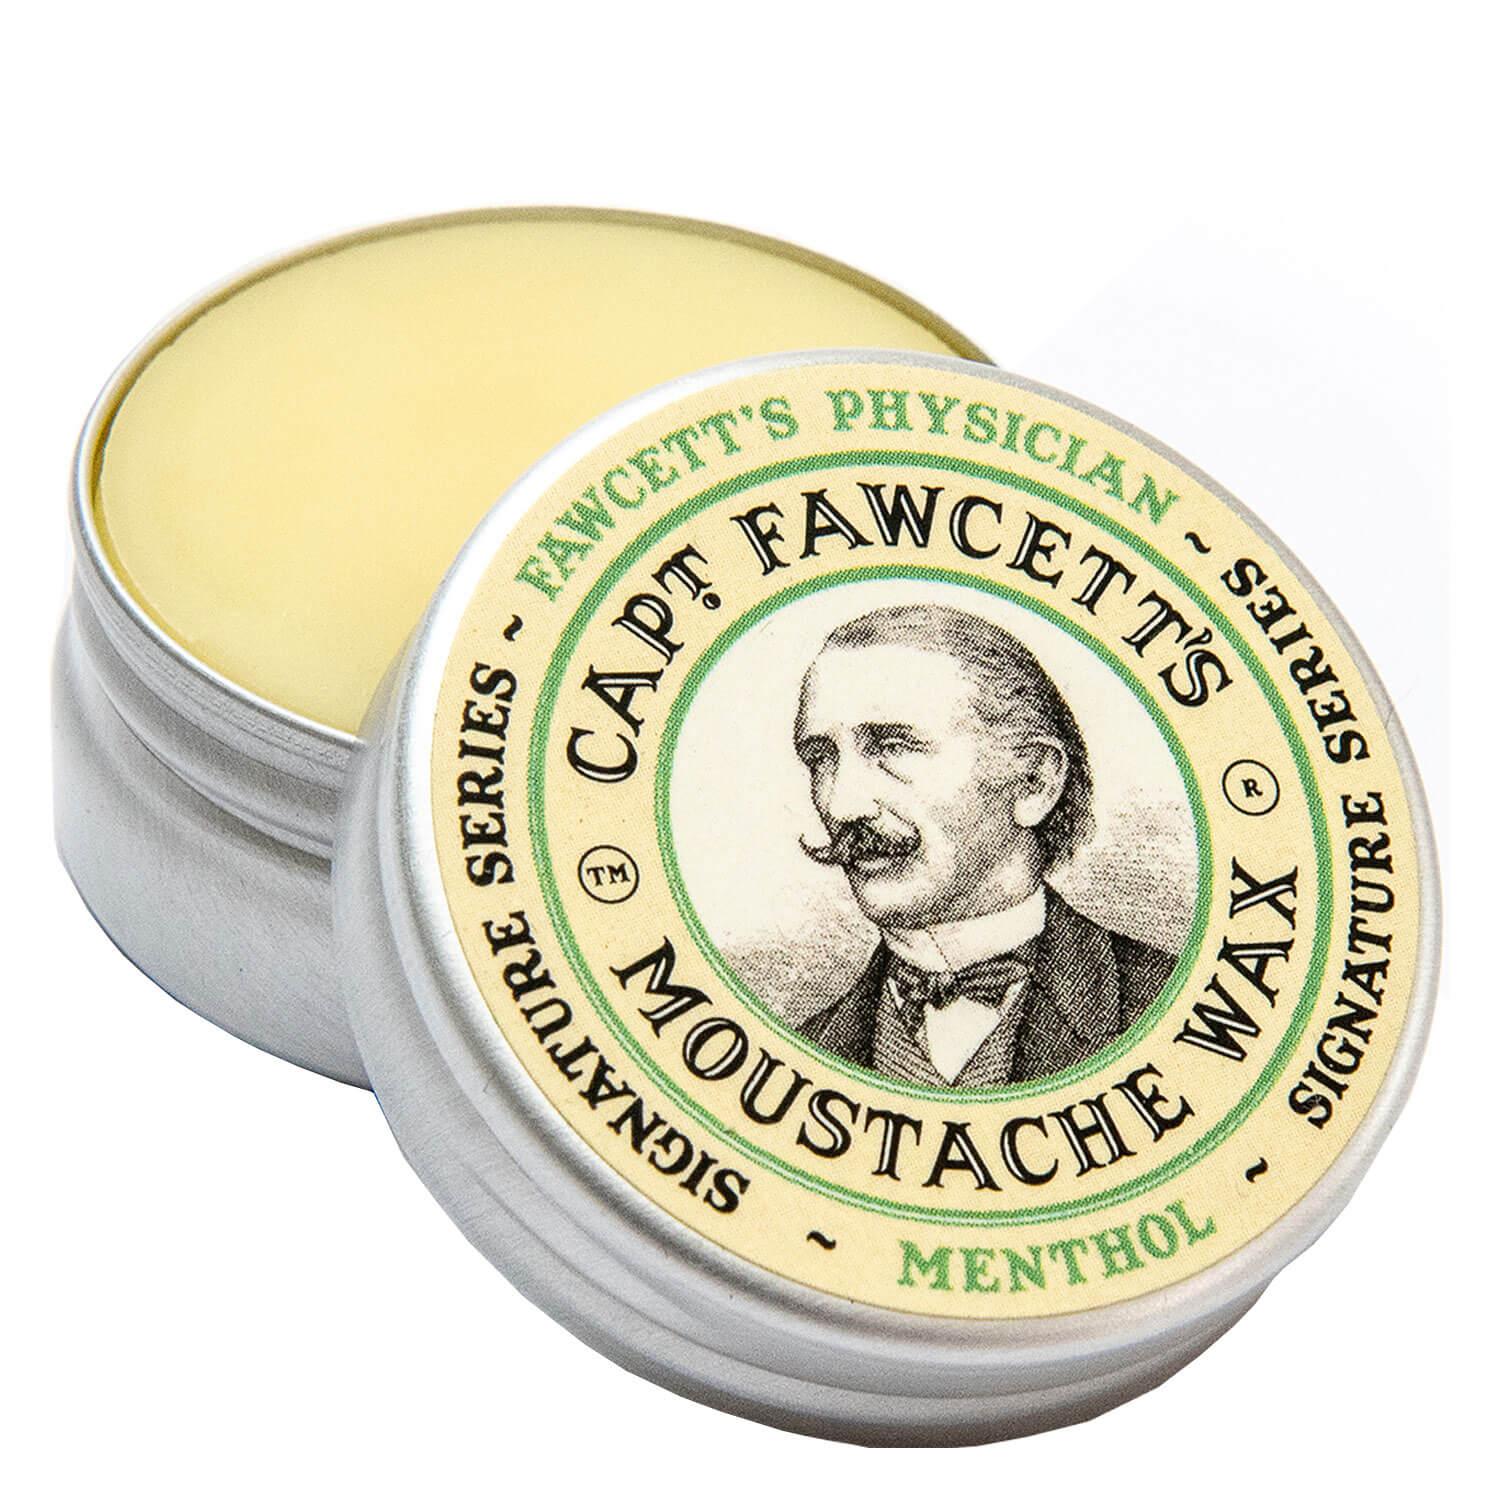 Capt. Fawcett Care - Fawcett's Physician Moustache Wax